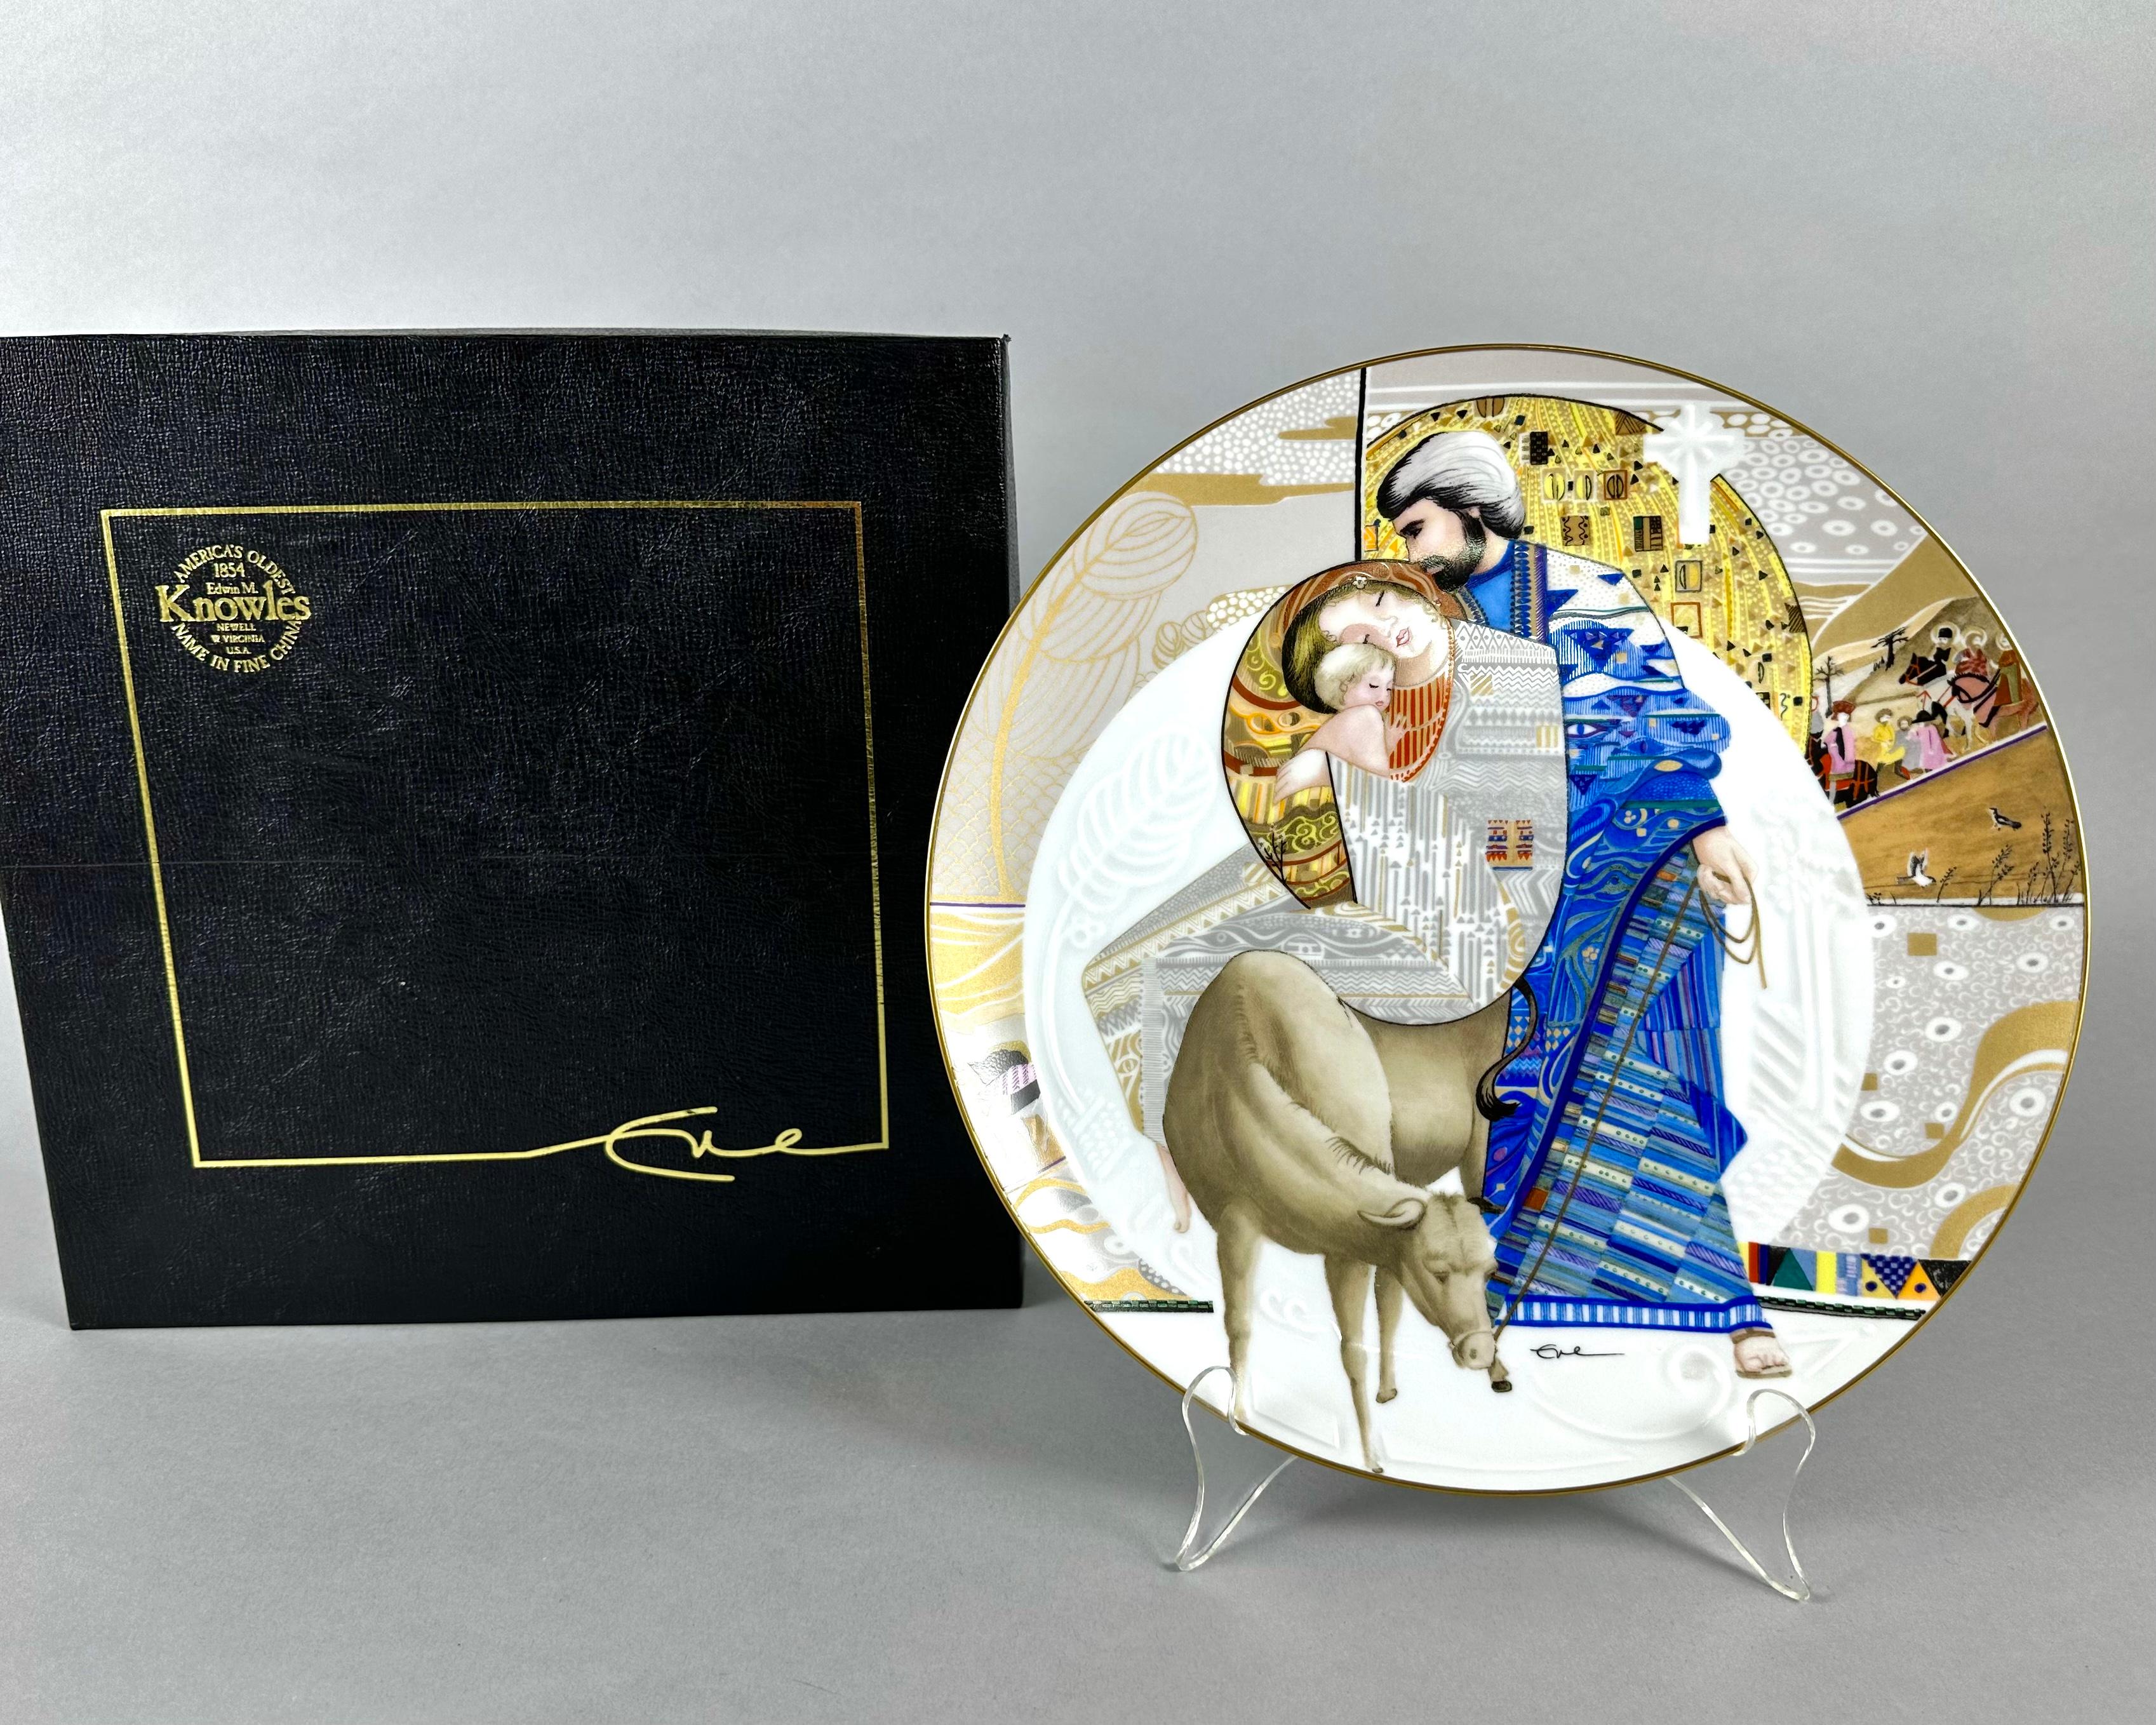 Une collection de plaques numérotées de collection en porcelaine fine d'Edwin M. Knowles de la Collection Mothers Biblical par l'artiste Eve Licea.

Fabriqué selon la technique originale du style Licea, combinant une texture volumineuse et des